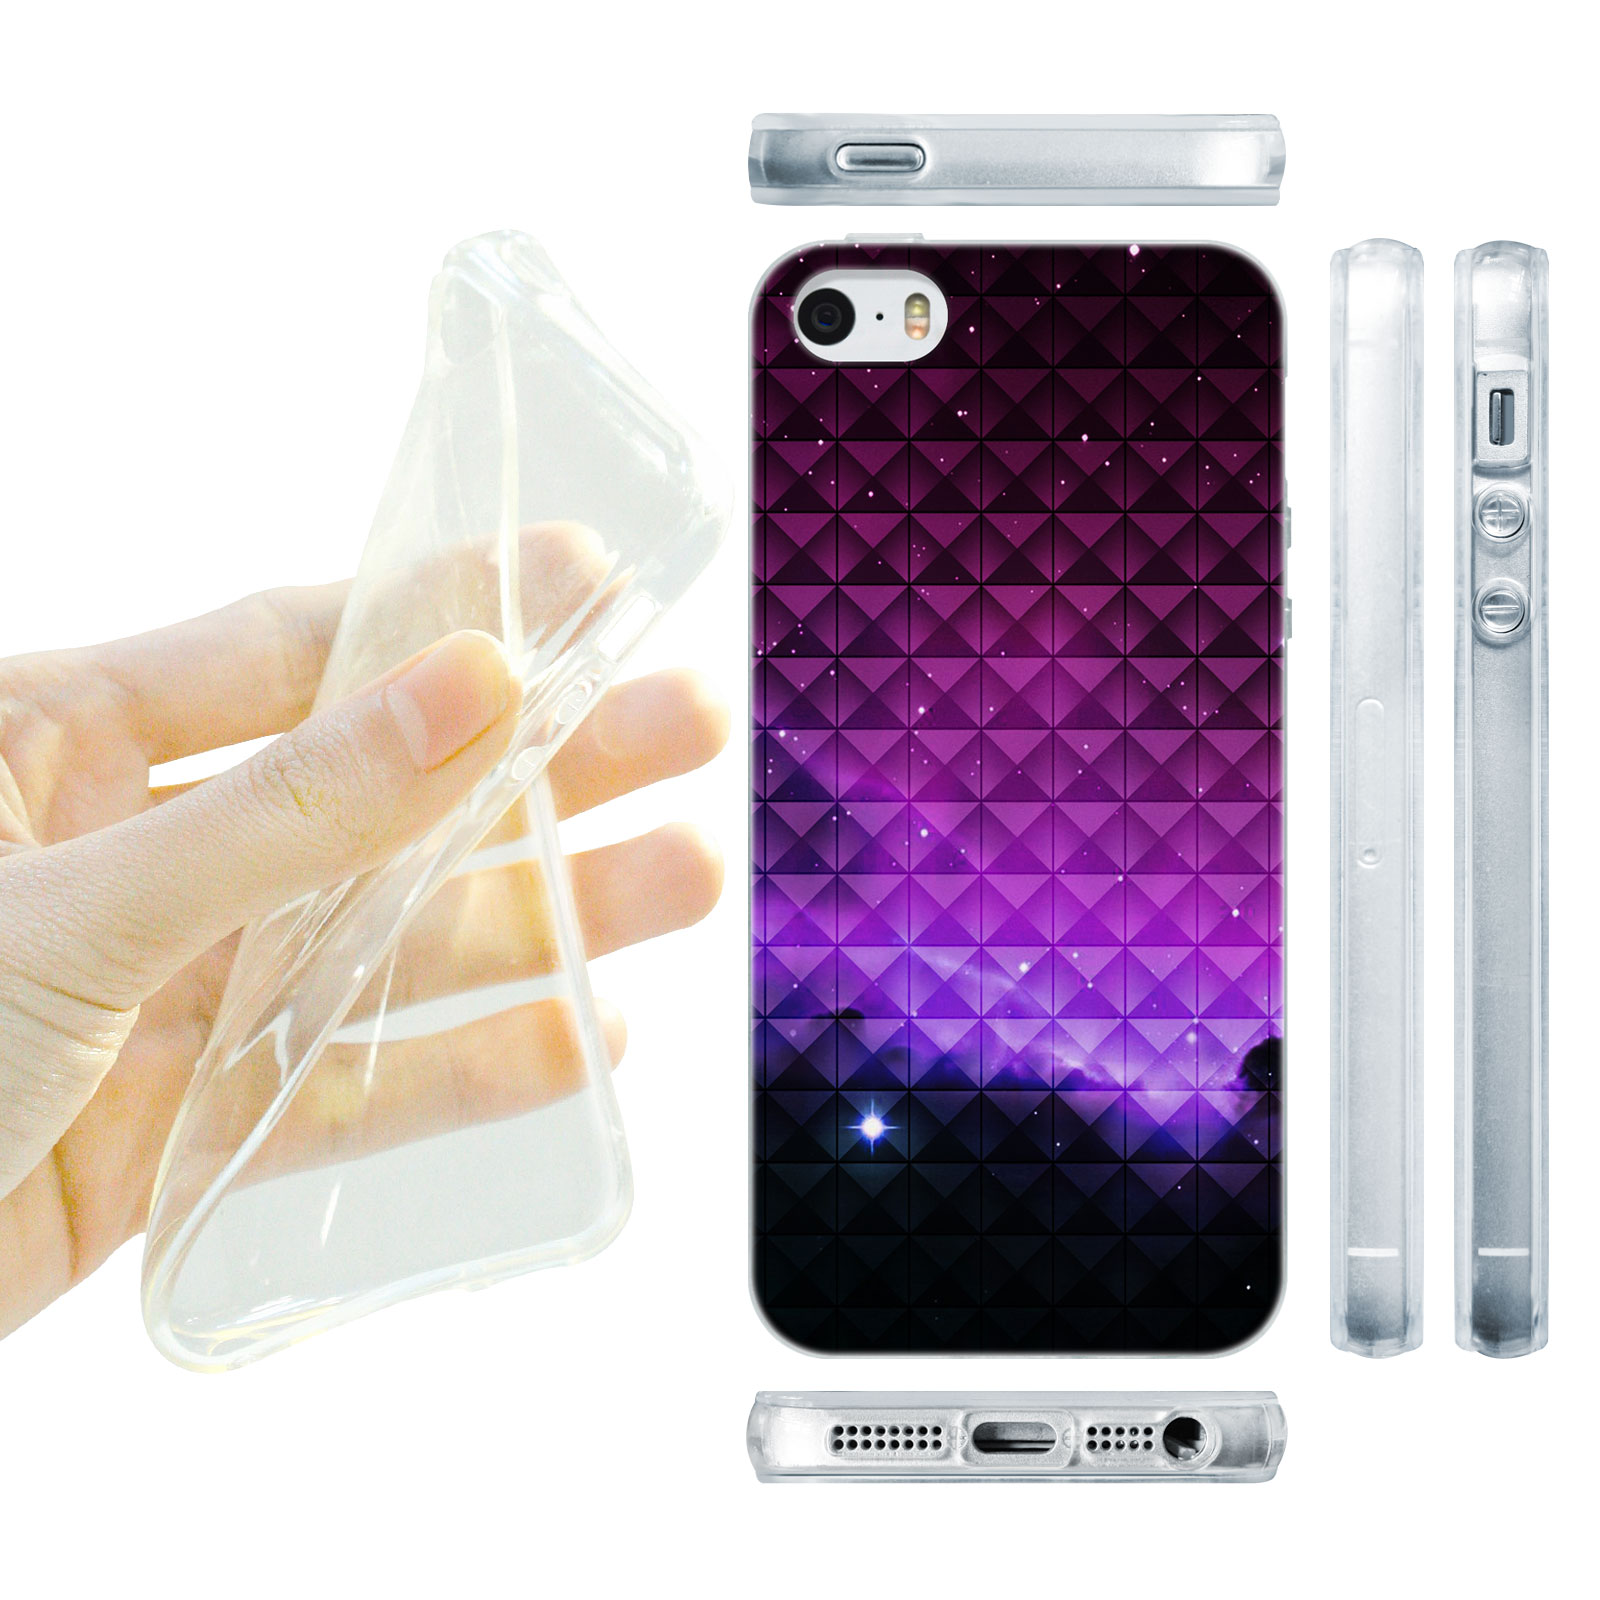 HEAD CASE silikonový obal na mobil Iphone 5/5S  vzor vesmír fialová záře